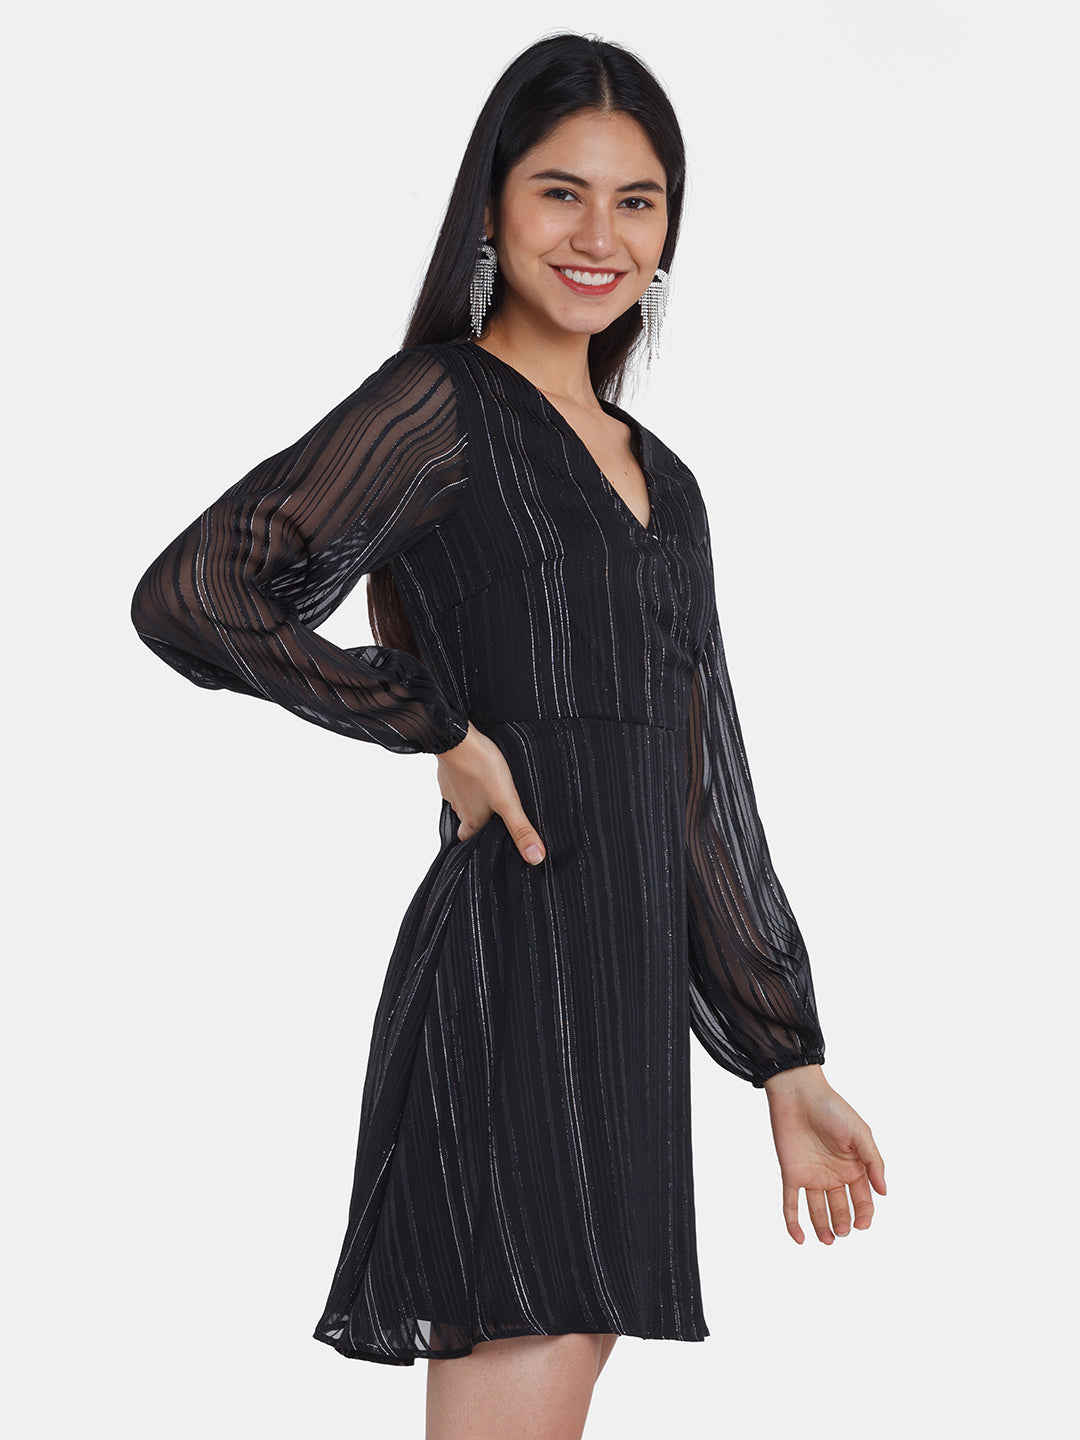 Black Striped Short Dress For Women